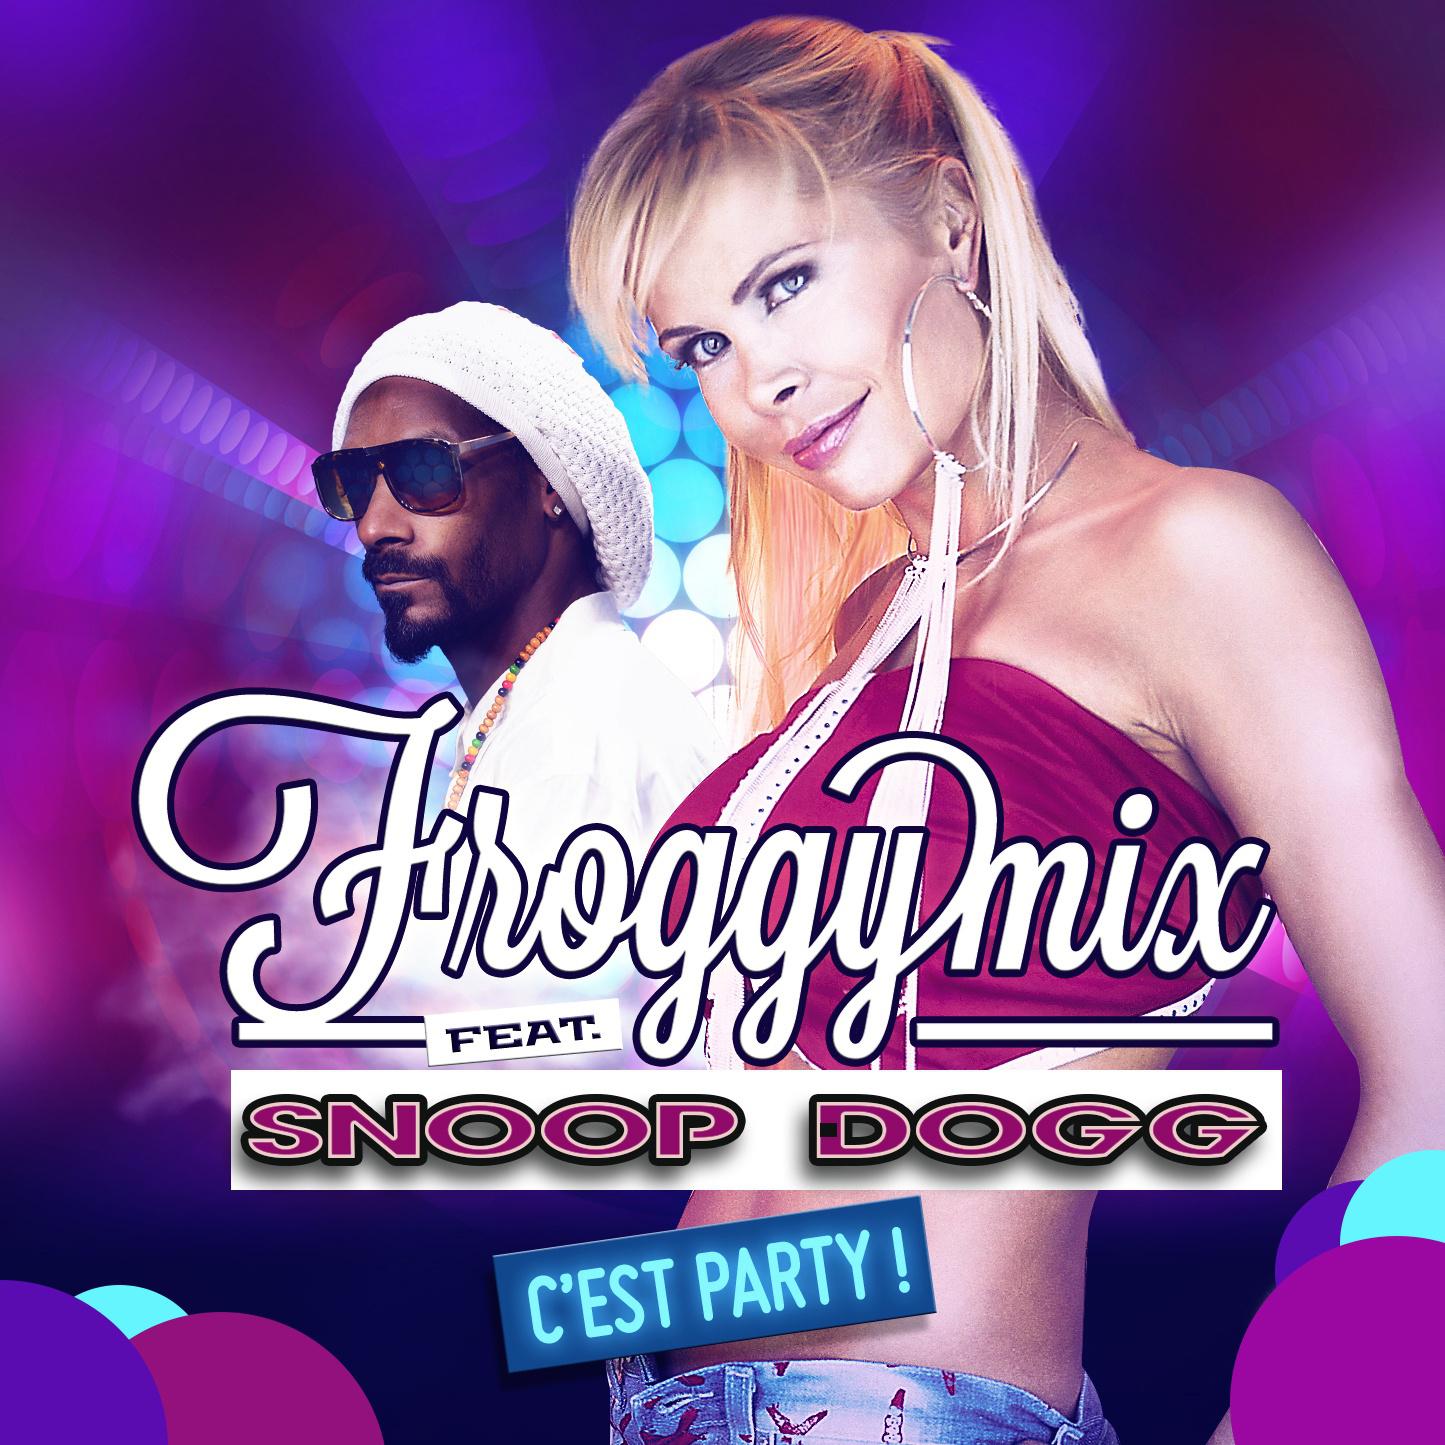 Snoop Dogg - C'est Party! (KOBETORE Radio Edit)